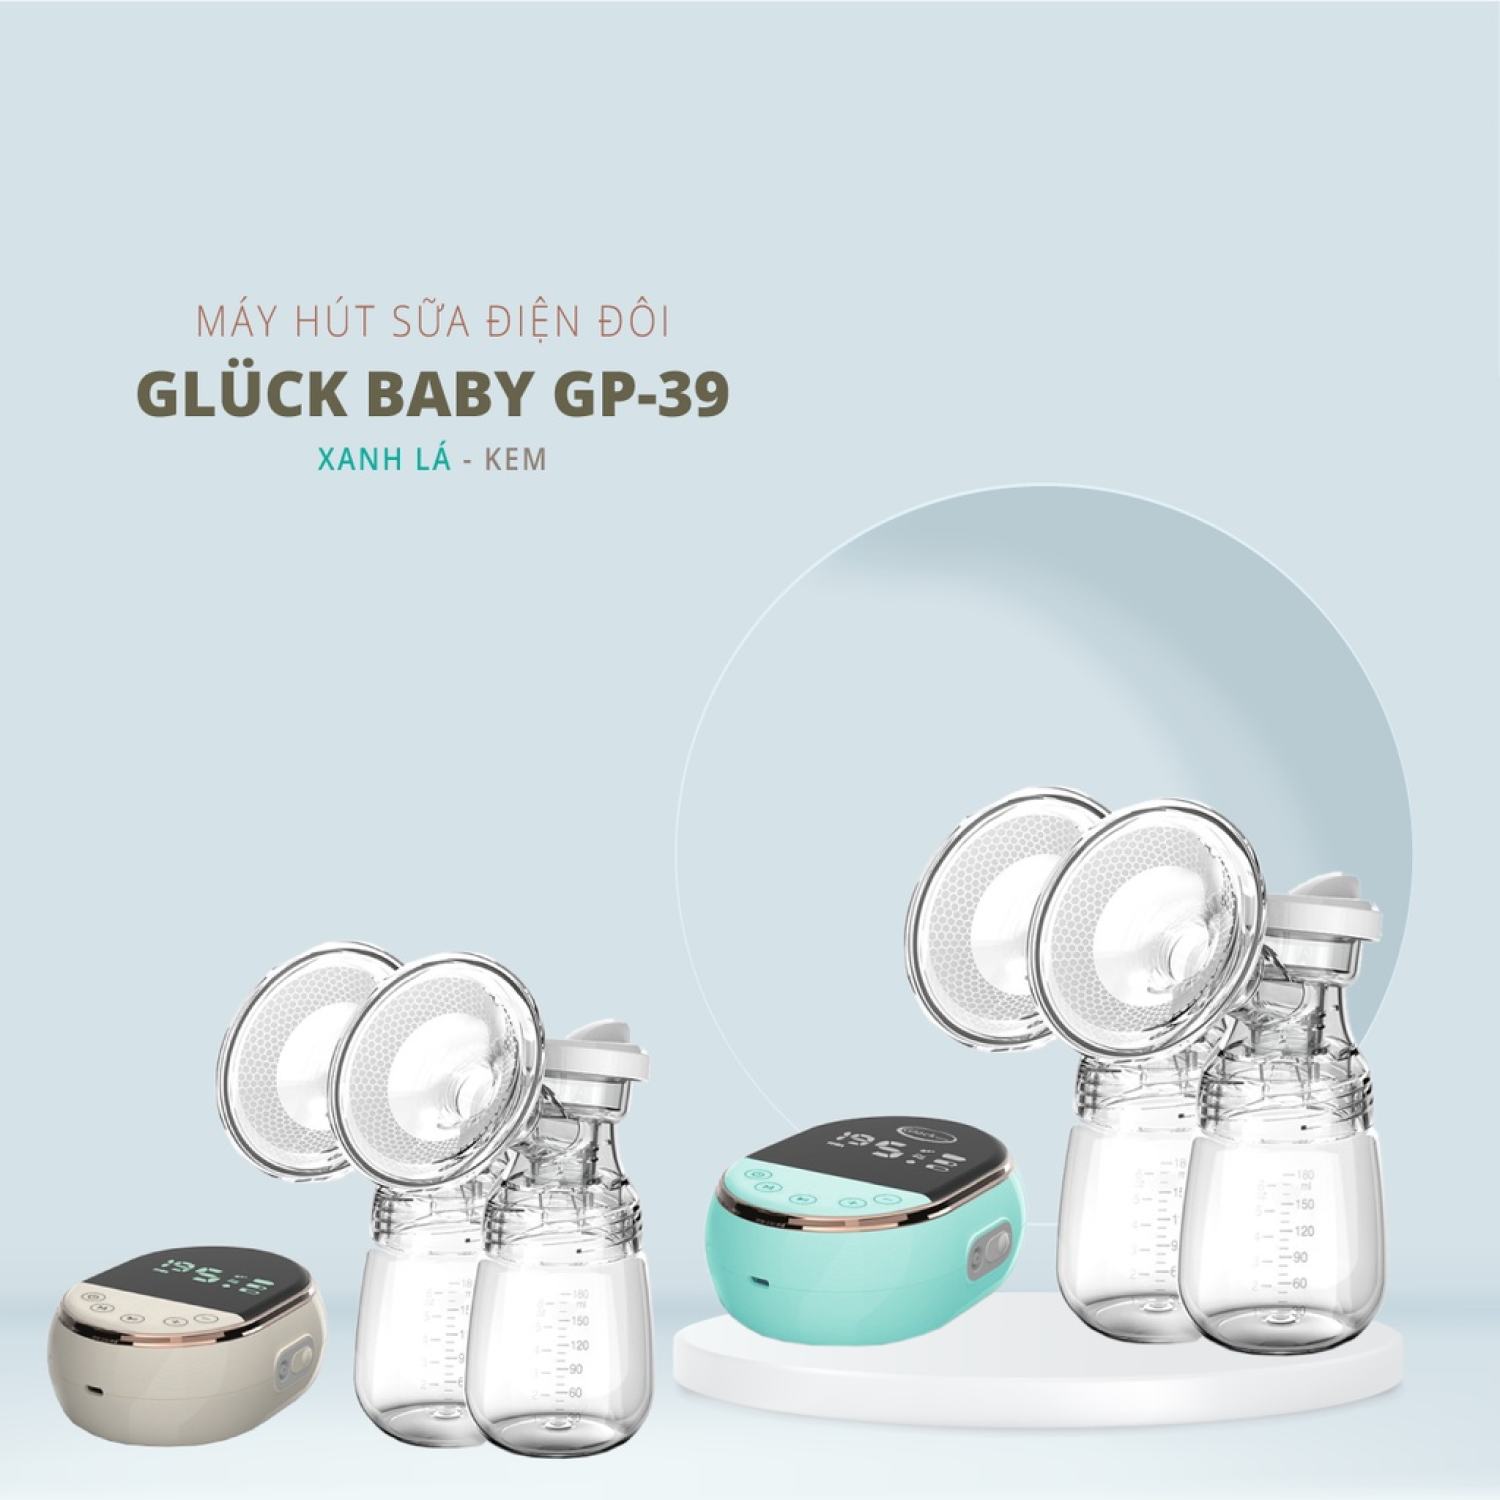 Máy Hút Sữa Điện Đôi GP-39 - Gluck Baby